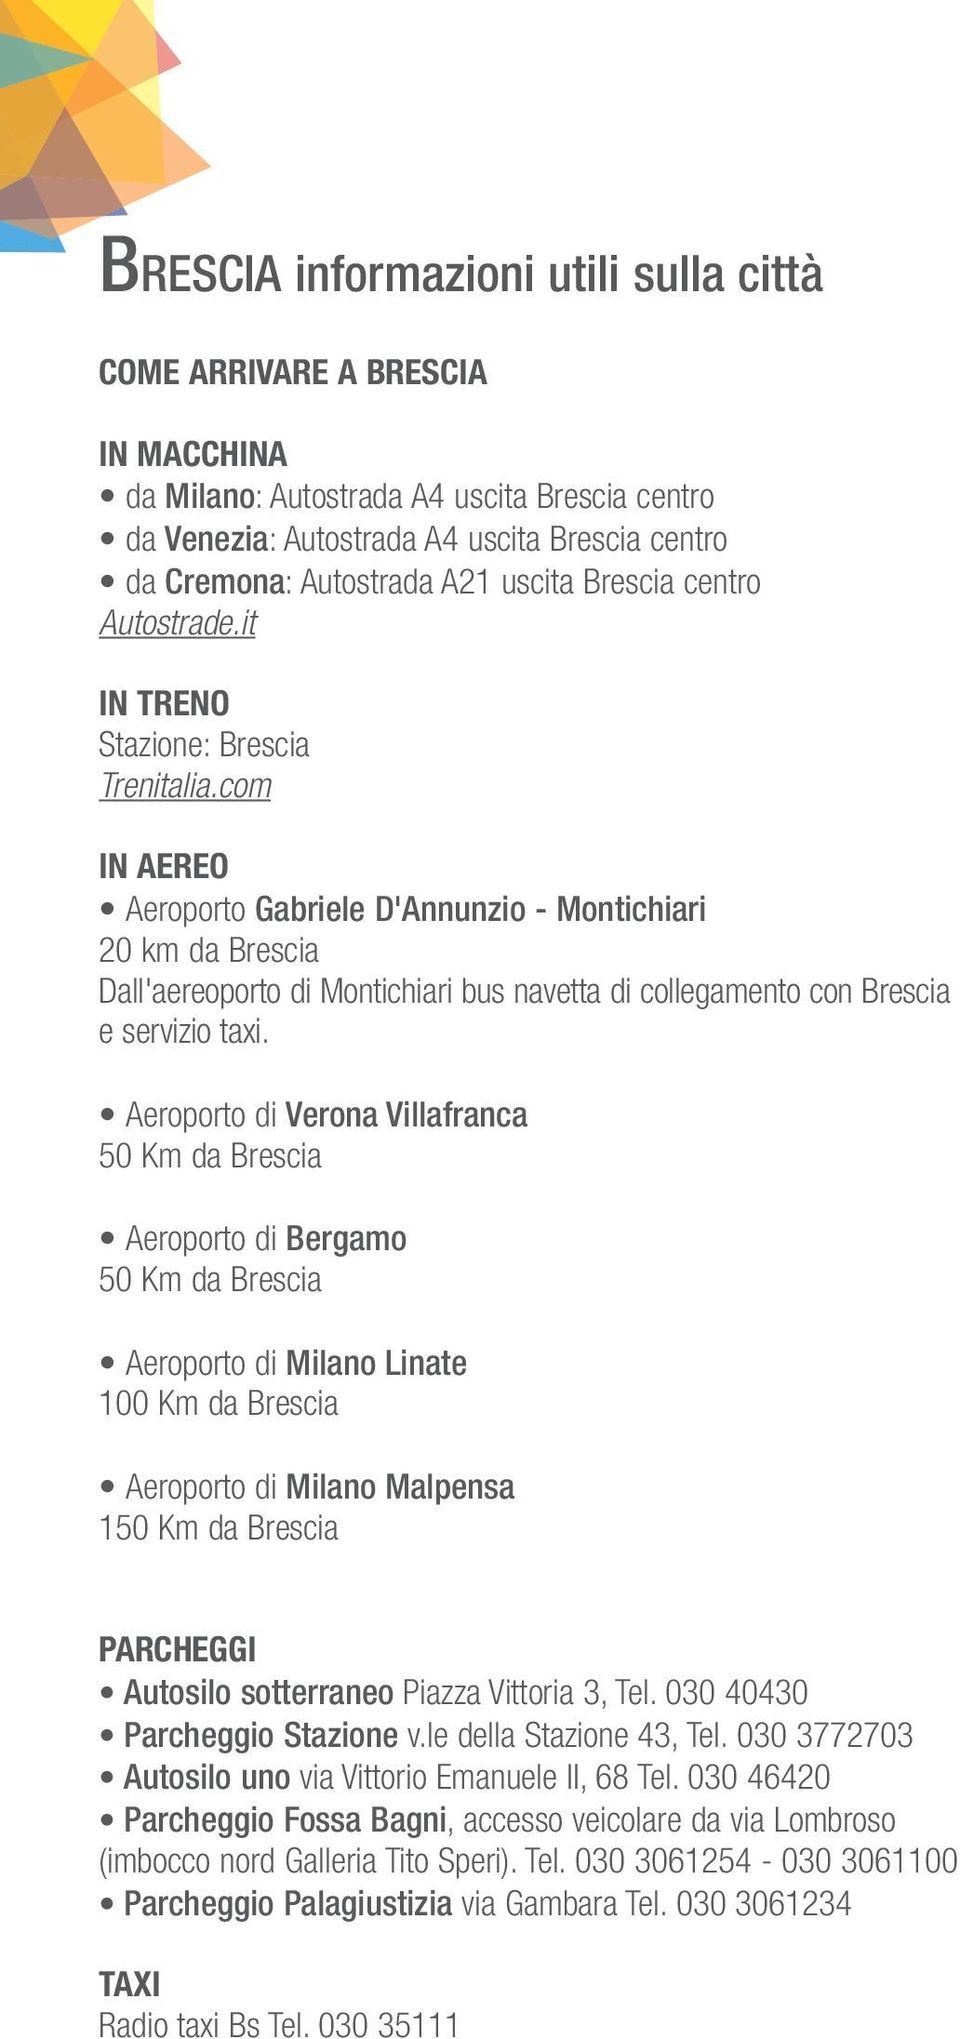 com IN AEREO Aeroporto Gabriele D'Annunzio - Montichiari 20 km da Brescia Dall'aereoporto di Montichiari bus navetta di collegamento con Brescia e servizio taxi.